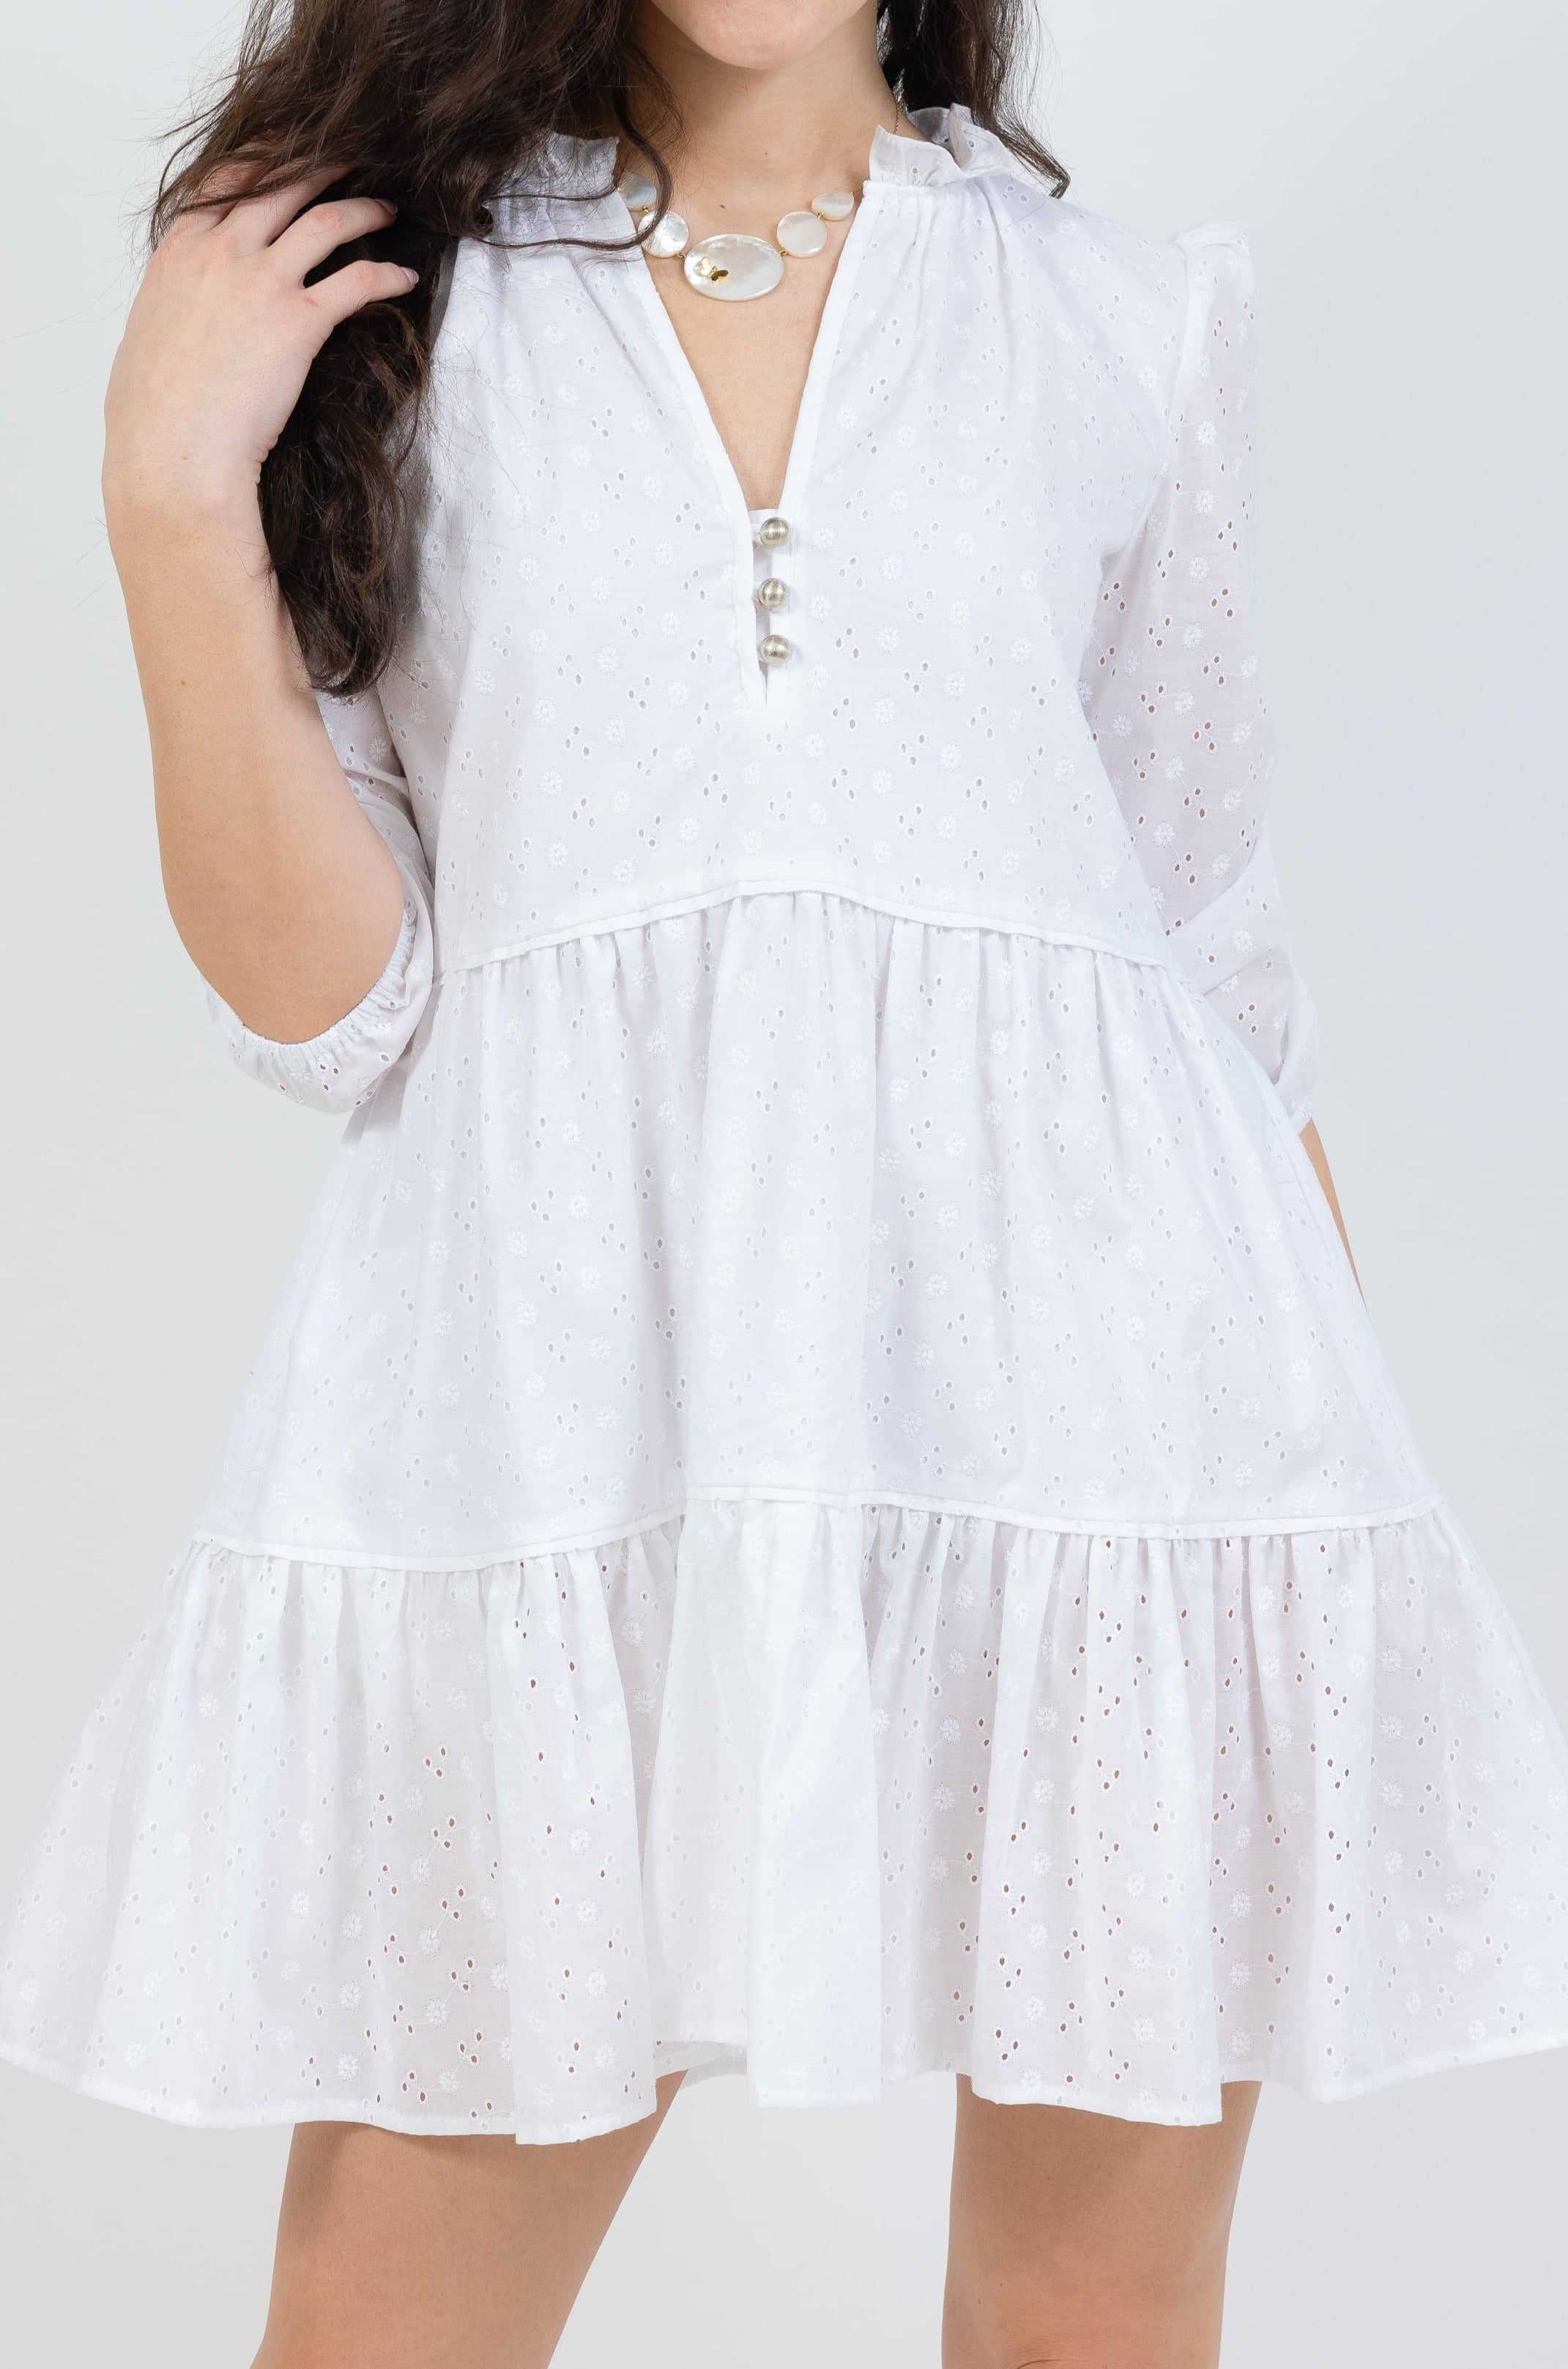 santorini mini dress in white eyelet color - design details